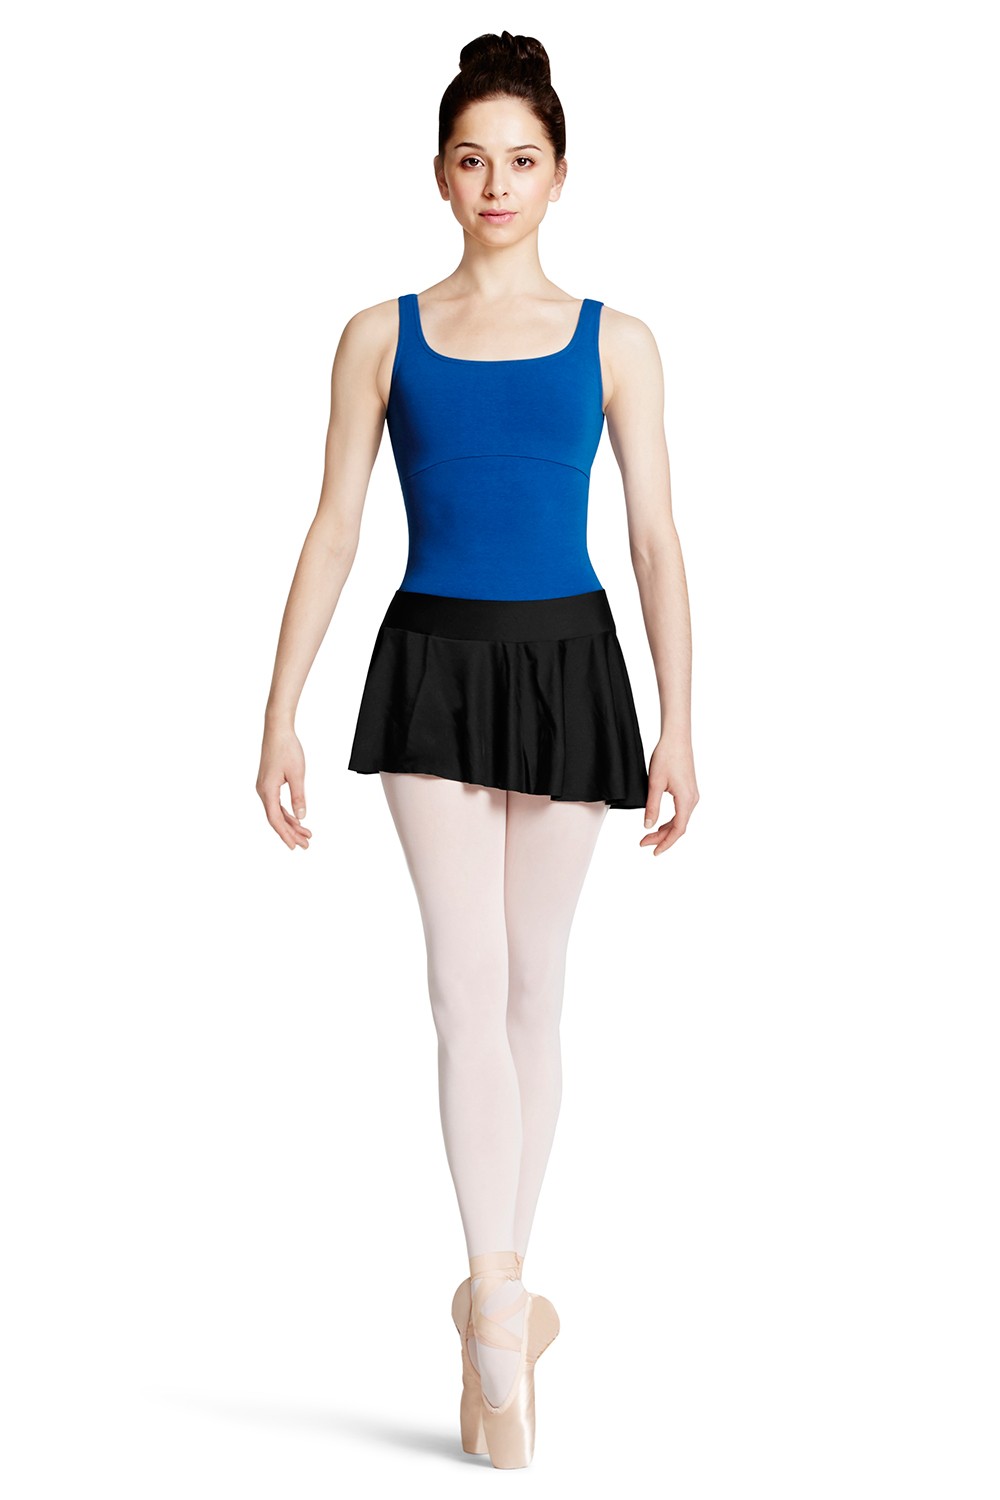 BLOCH® Women's Dance & Ballet Skirts - BLOCH® US Store